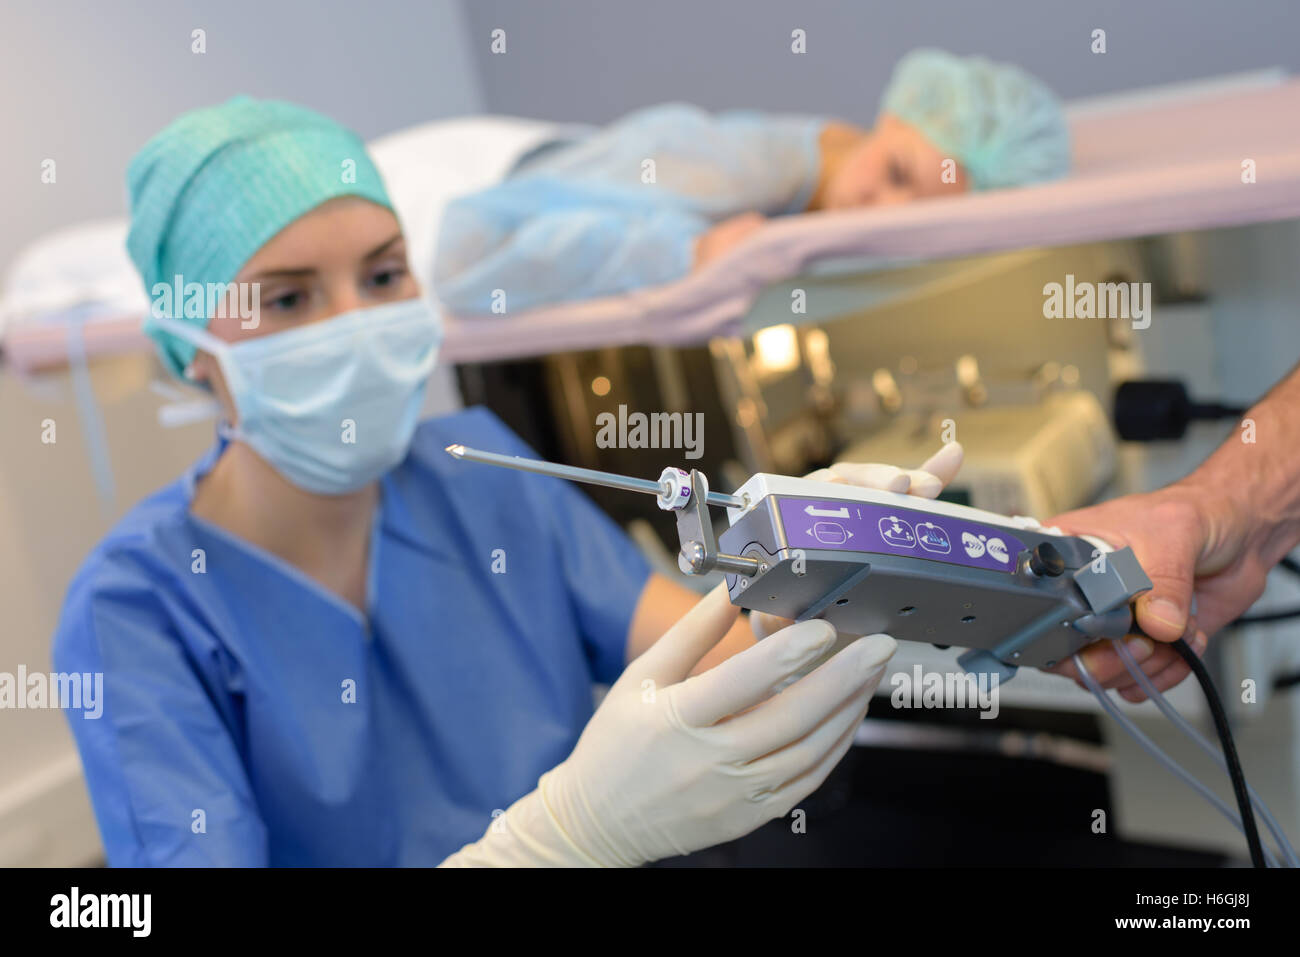 Nurse preparing equipment for medical procedure Stock Photo